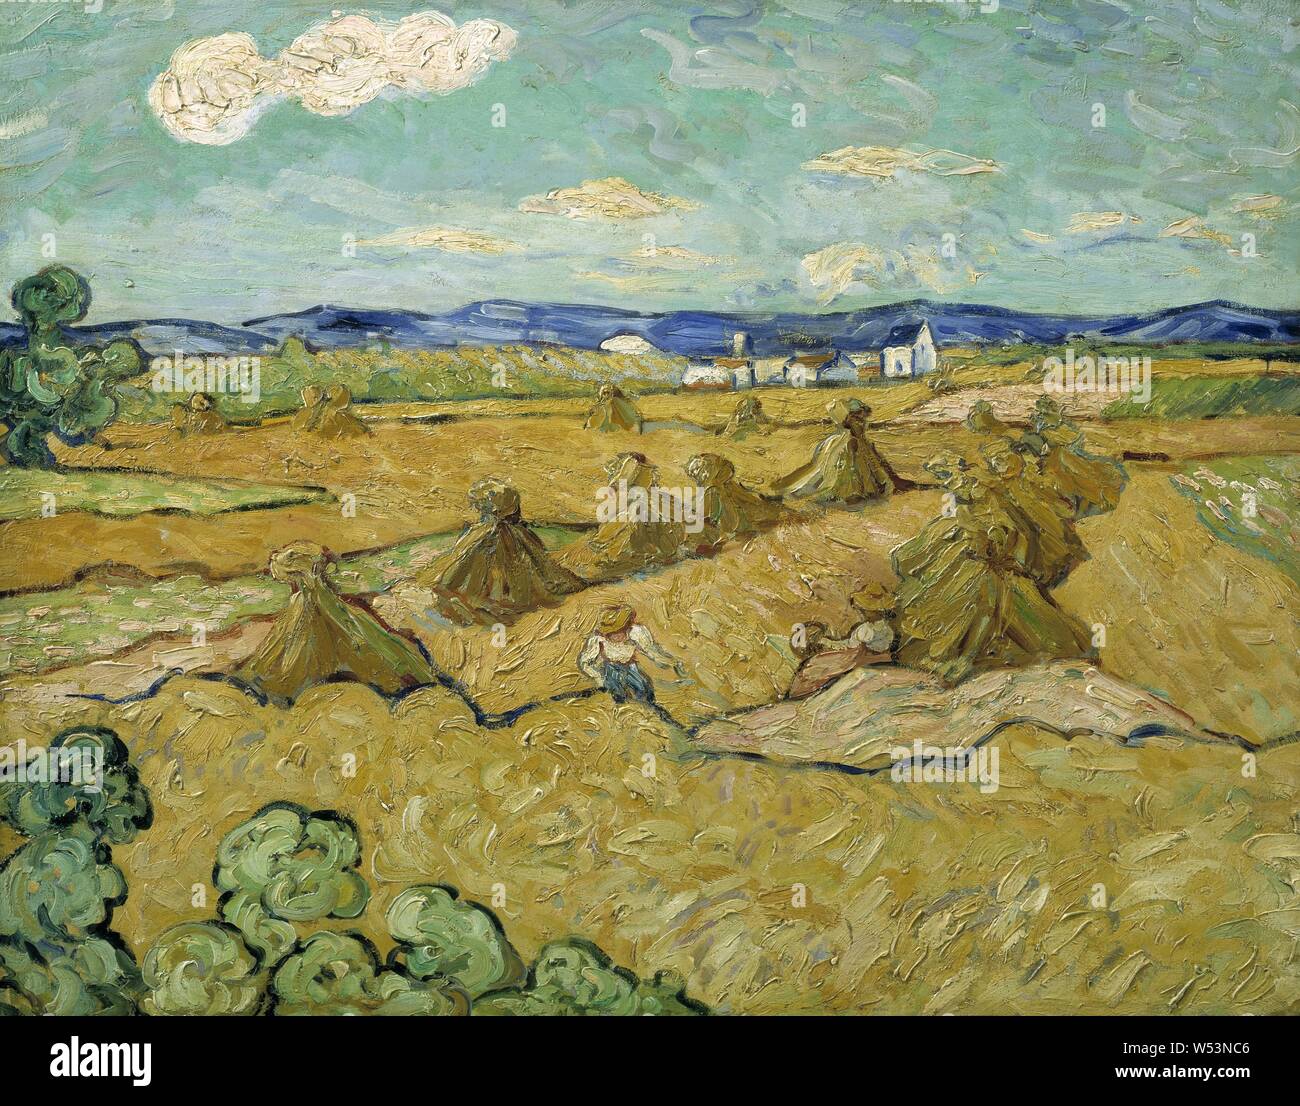 Nach Vincent van Gogh, der Cornshocks, Saeesskylarna, Malerei, Landschaft, Kunst, Öl auf Leinwand, Höhe 53 cm (20,8 Zoll), Breite 66,5 cm (26,1 Zoll) Stockfoto